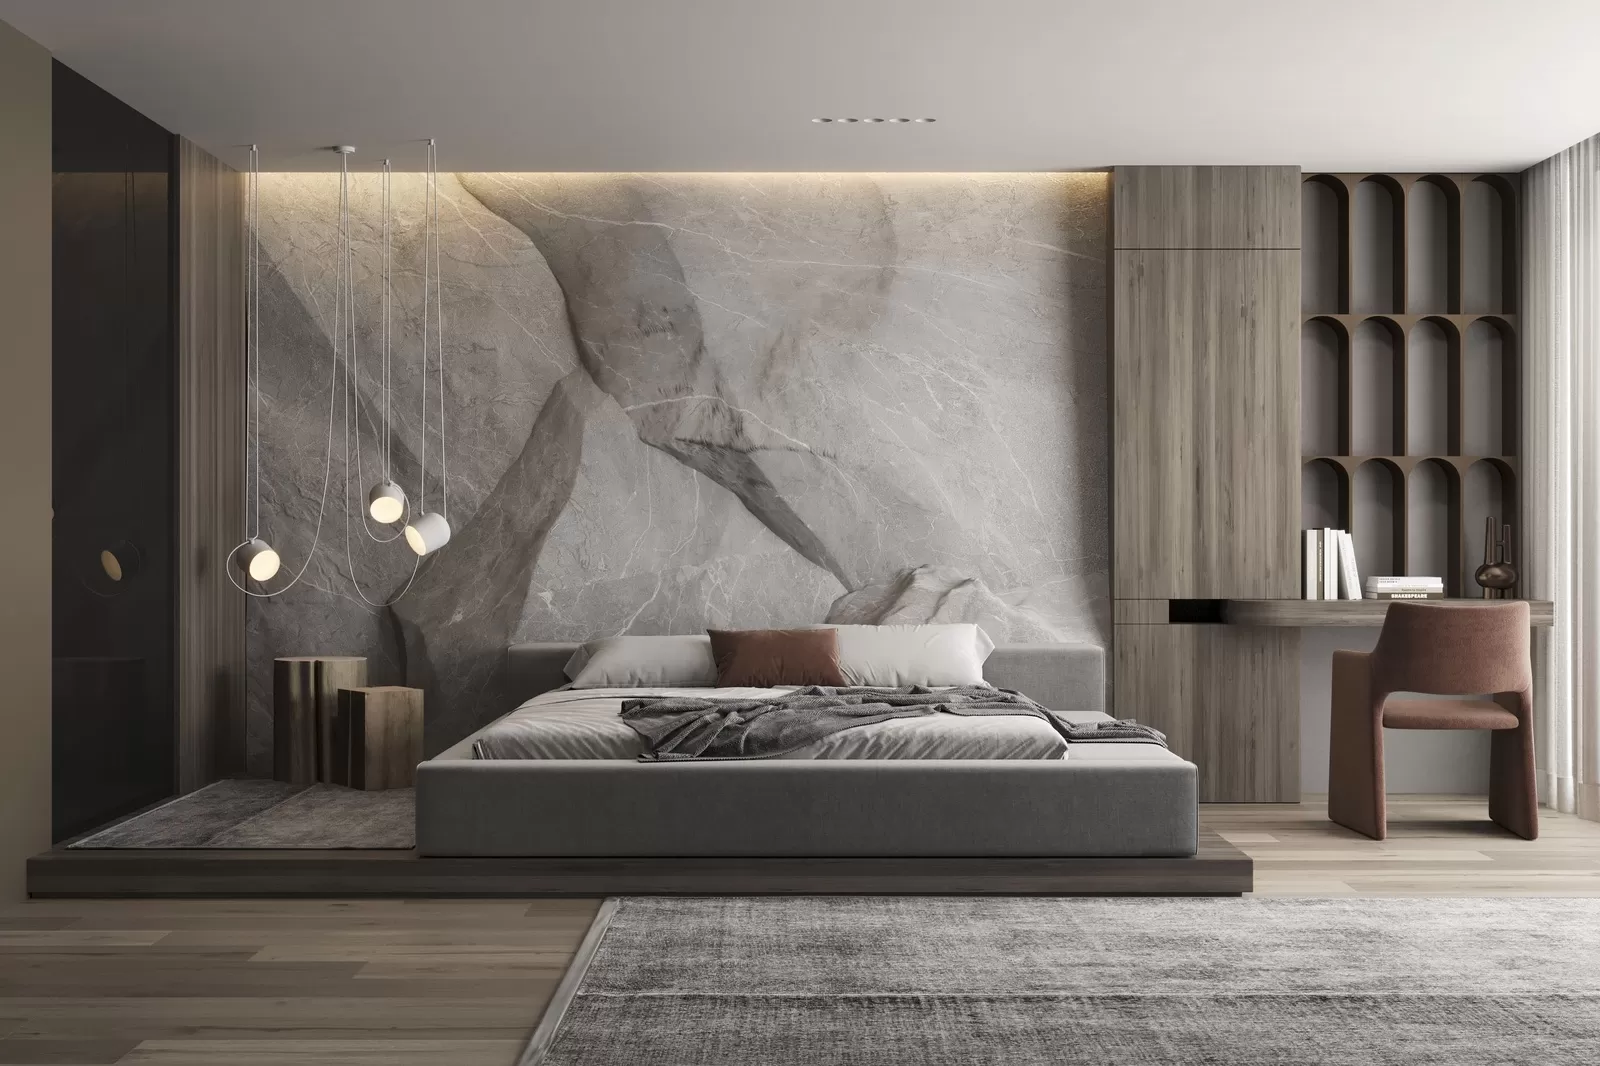 Thiết kế phòng ngủ phong cách Wabi sabi với điểm nhấn từ mảng tường đá gồ ghề cực ấn tượng